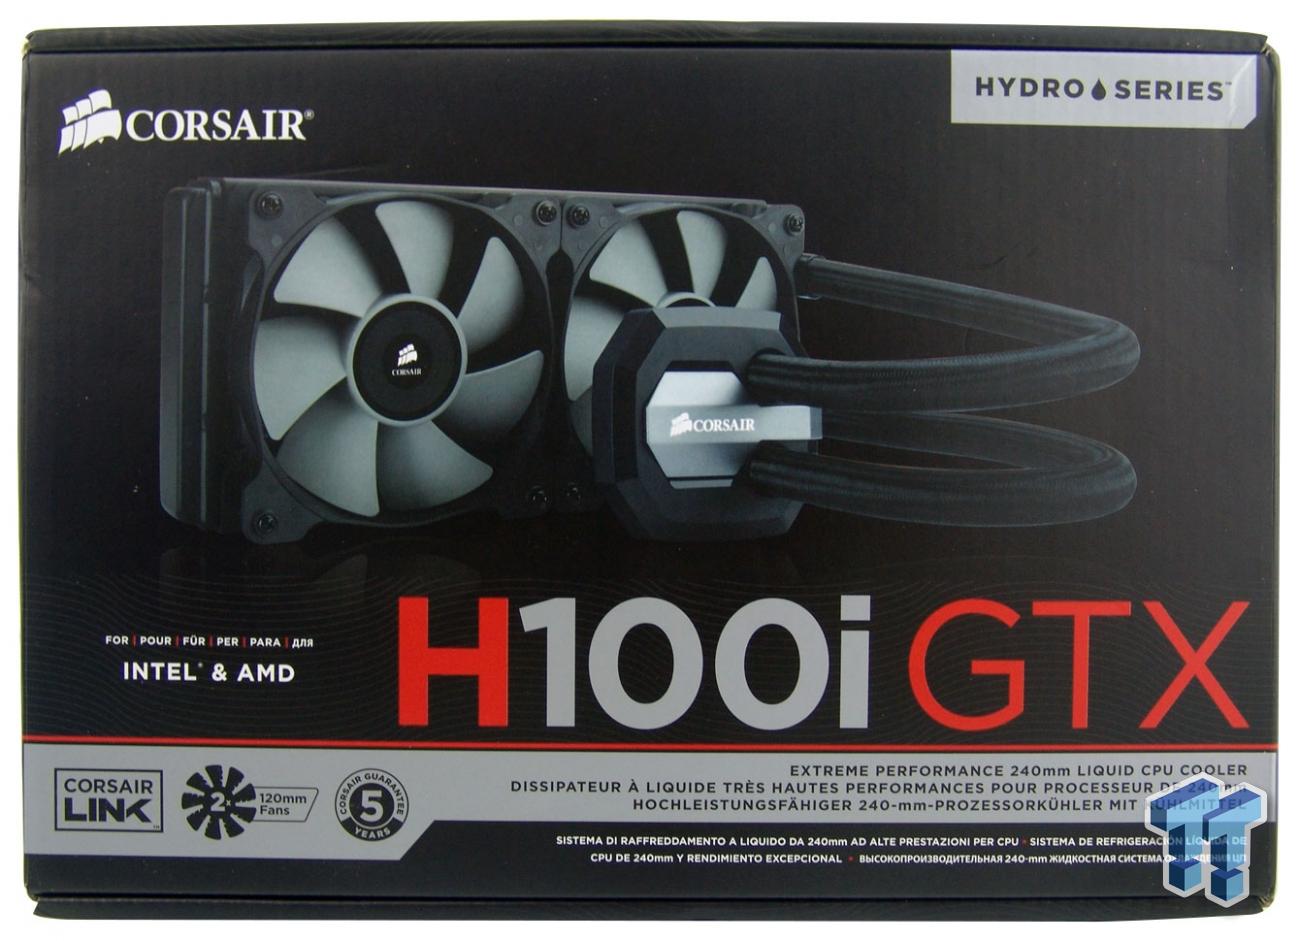 Corsair Hydro GTX High Performance Liquid CPU Review